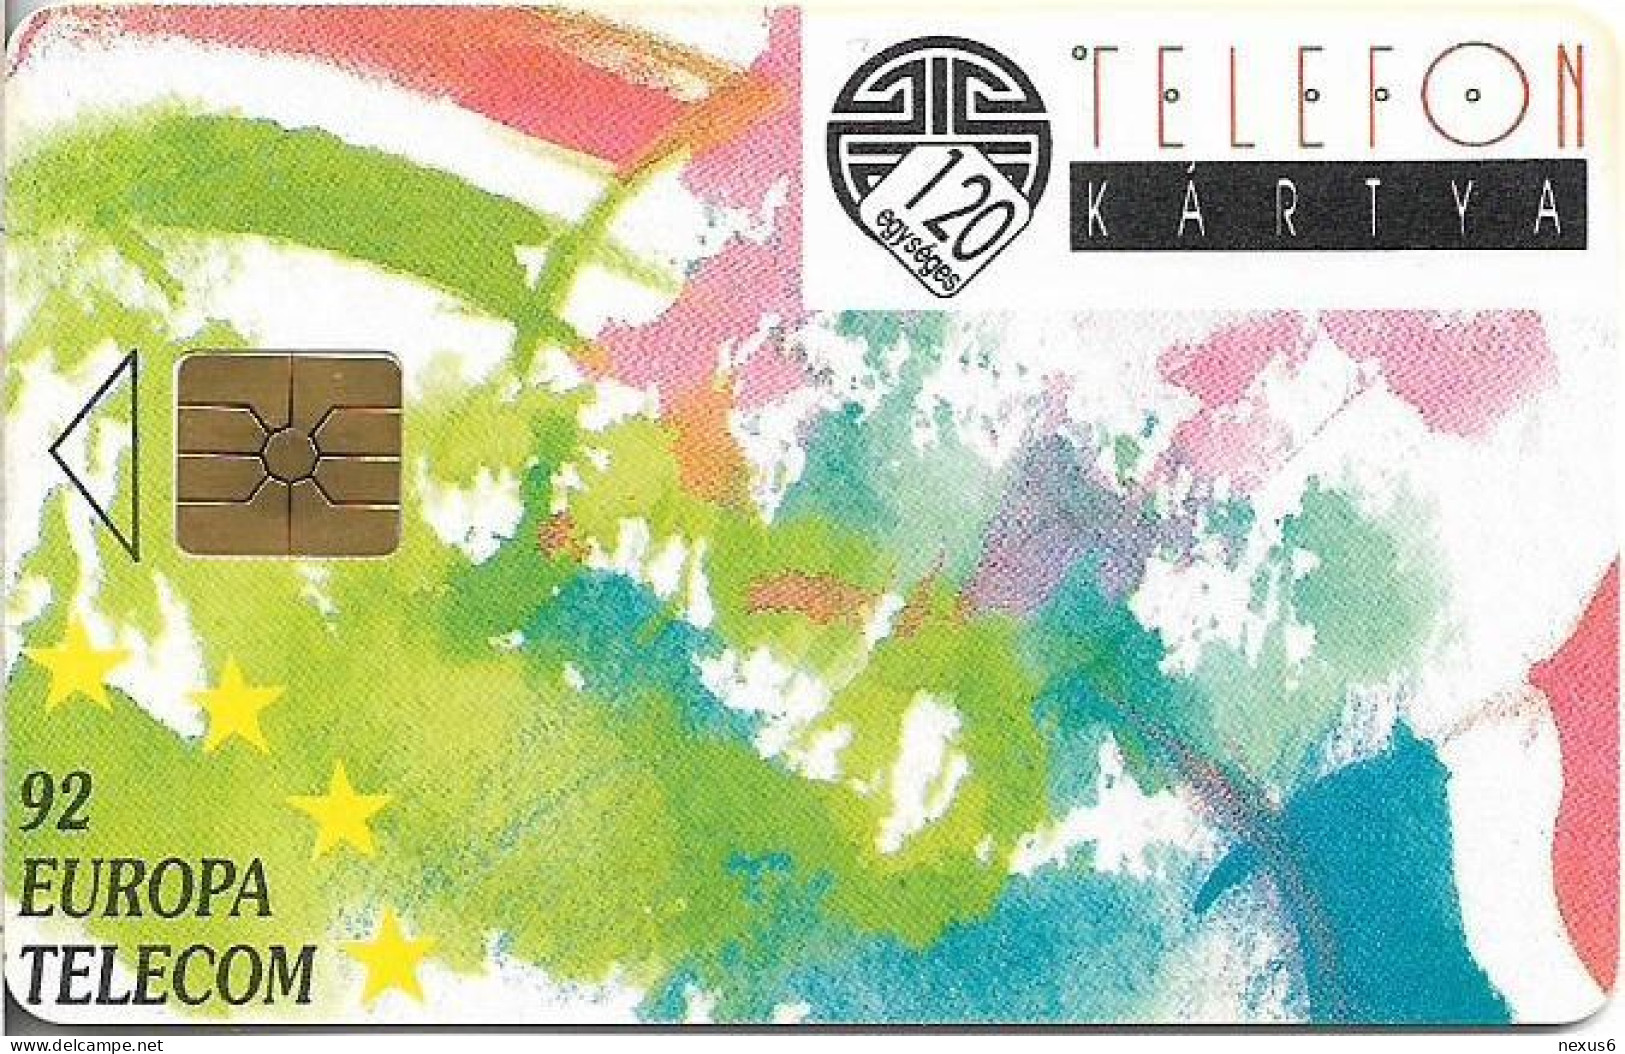 Hungary - Matáv - Europa Telecom 92, Gem1B Not Symm. Red, With Transp. Moreno, 10.1992, 120U, 10.000ex, Used - Hongarije